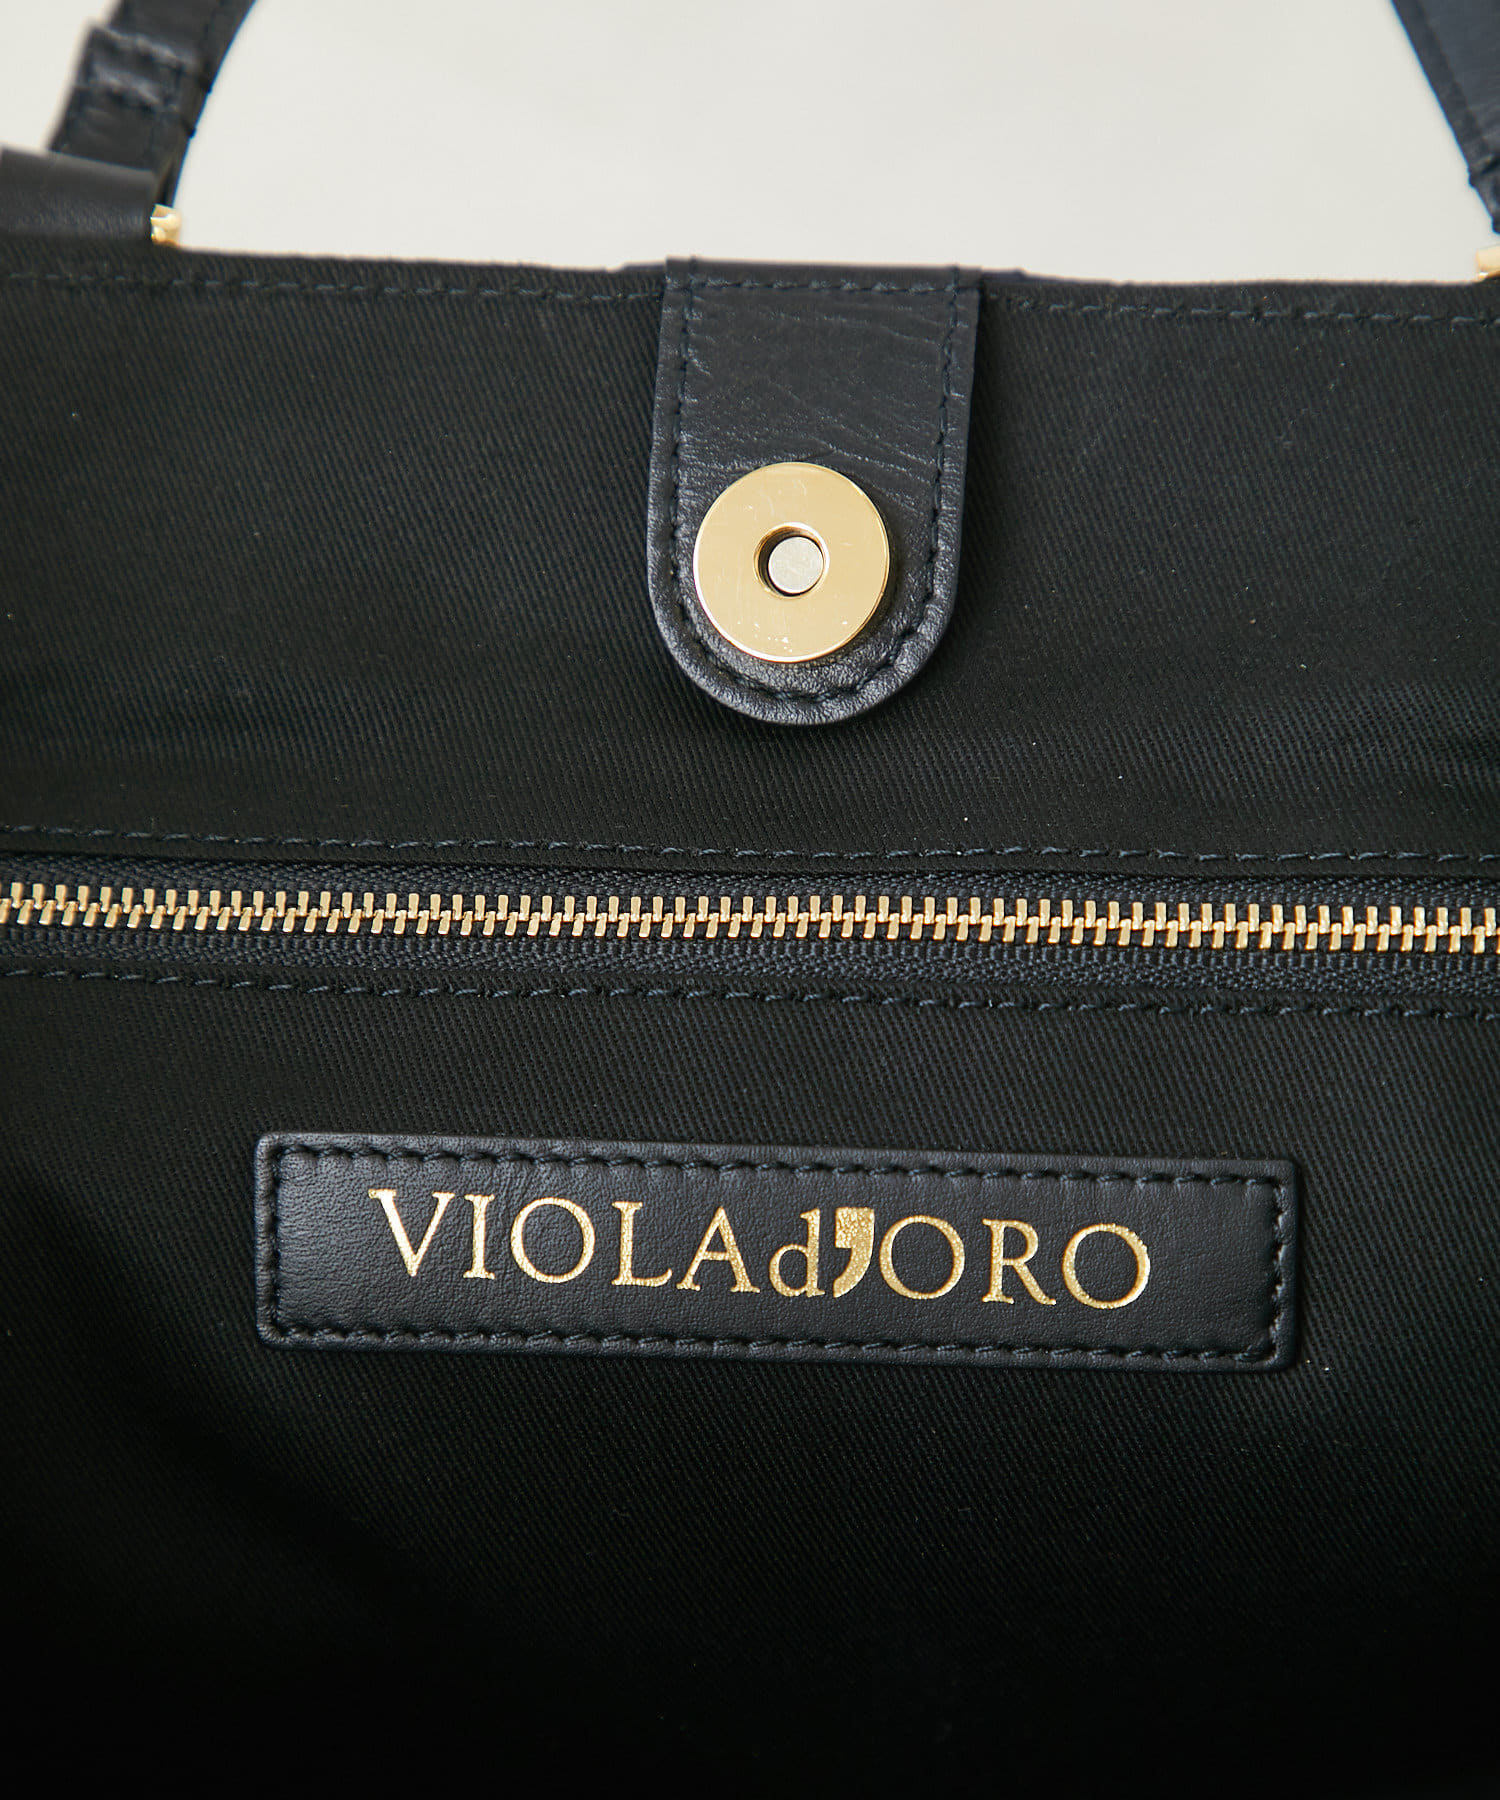 RIVE DROITE(リヴドロワ) 【VIOLAd'ORO(ヴィオラドーロ)】2WAYキルティングバッグ